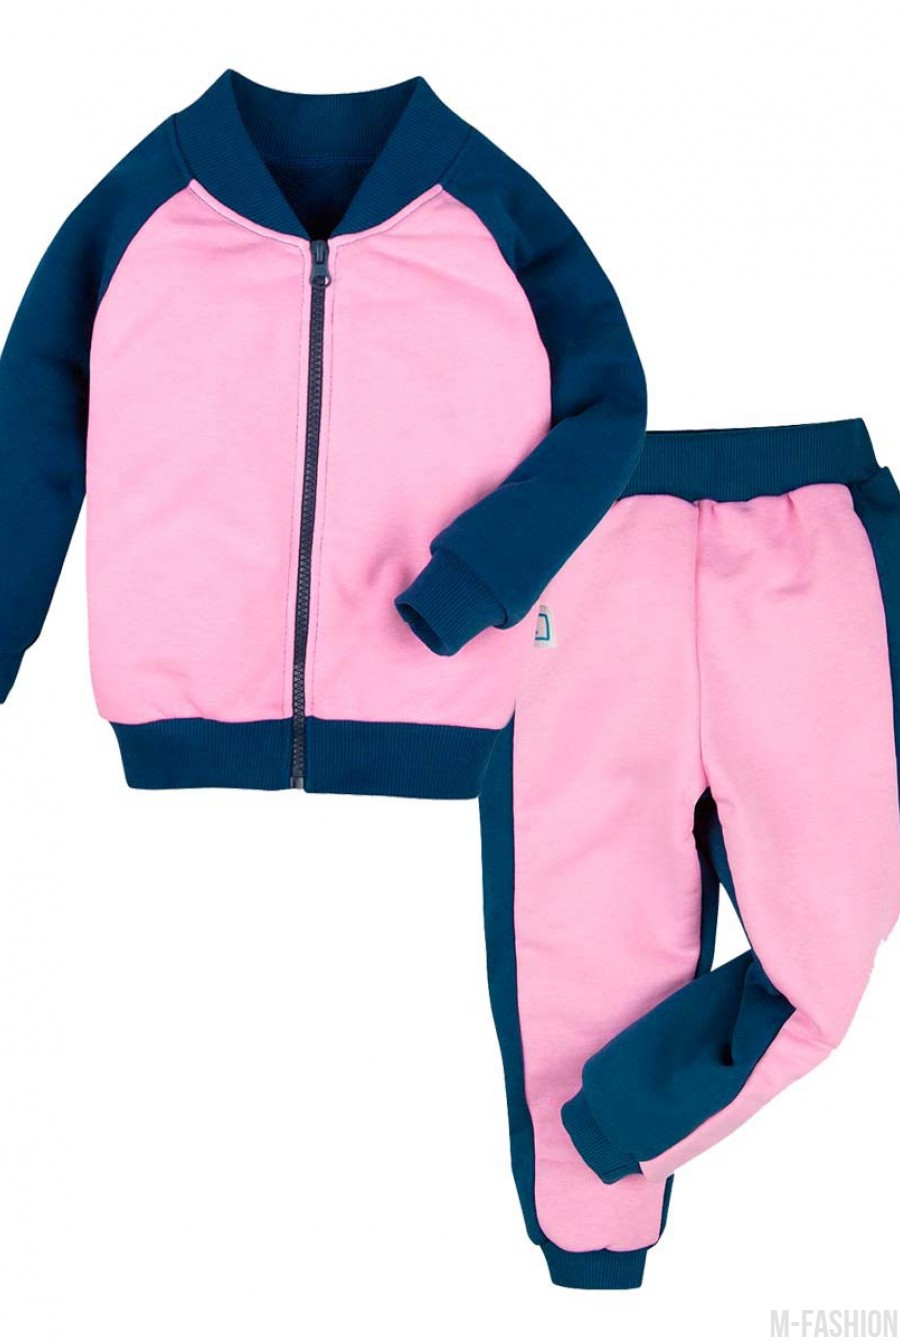 Сине-розовый утепленный спортивный костюм на молнии из футера - Фото 1